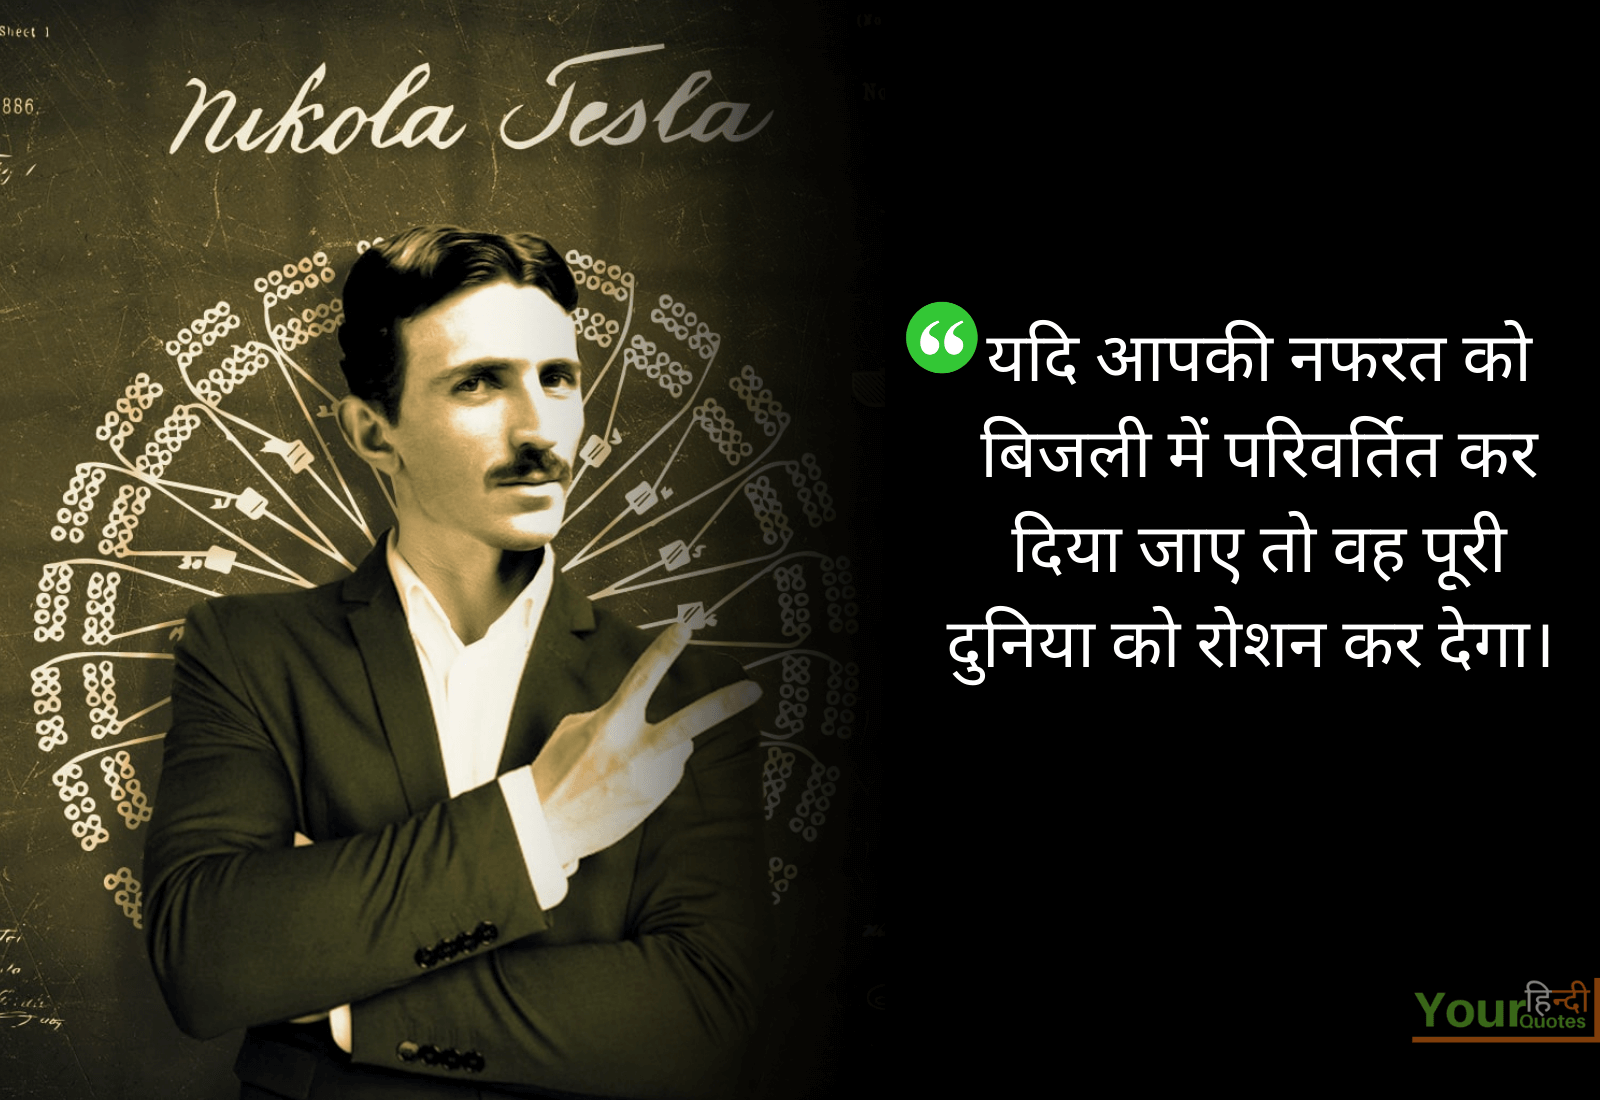 Nikola Tesla Quotes Image